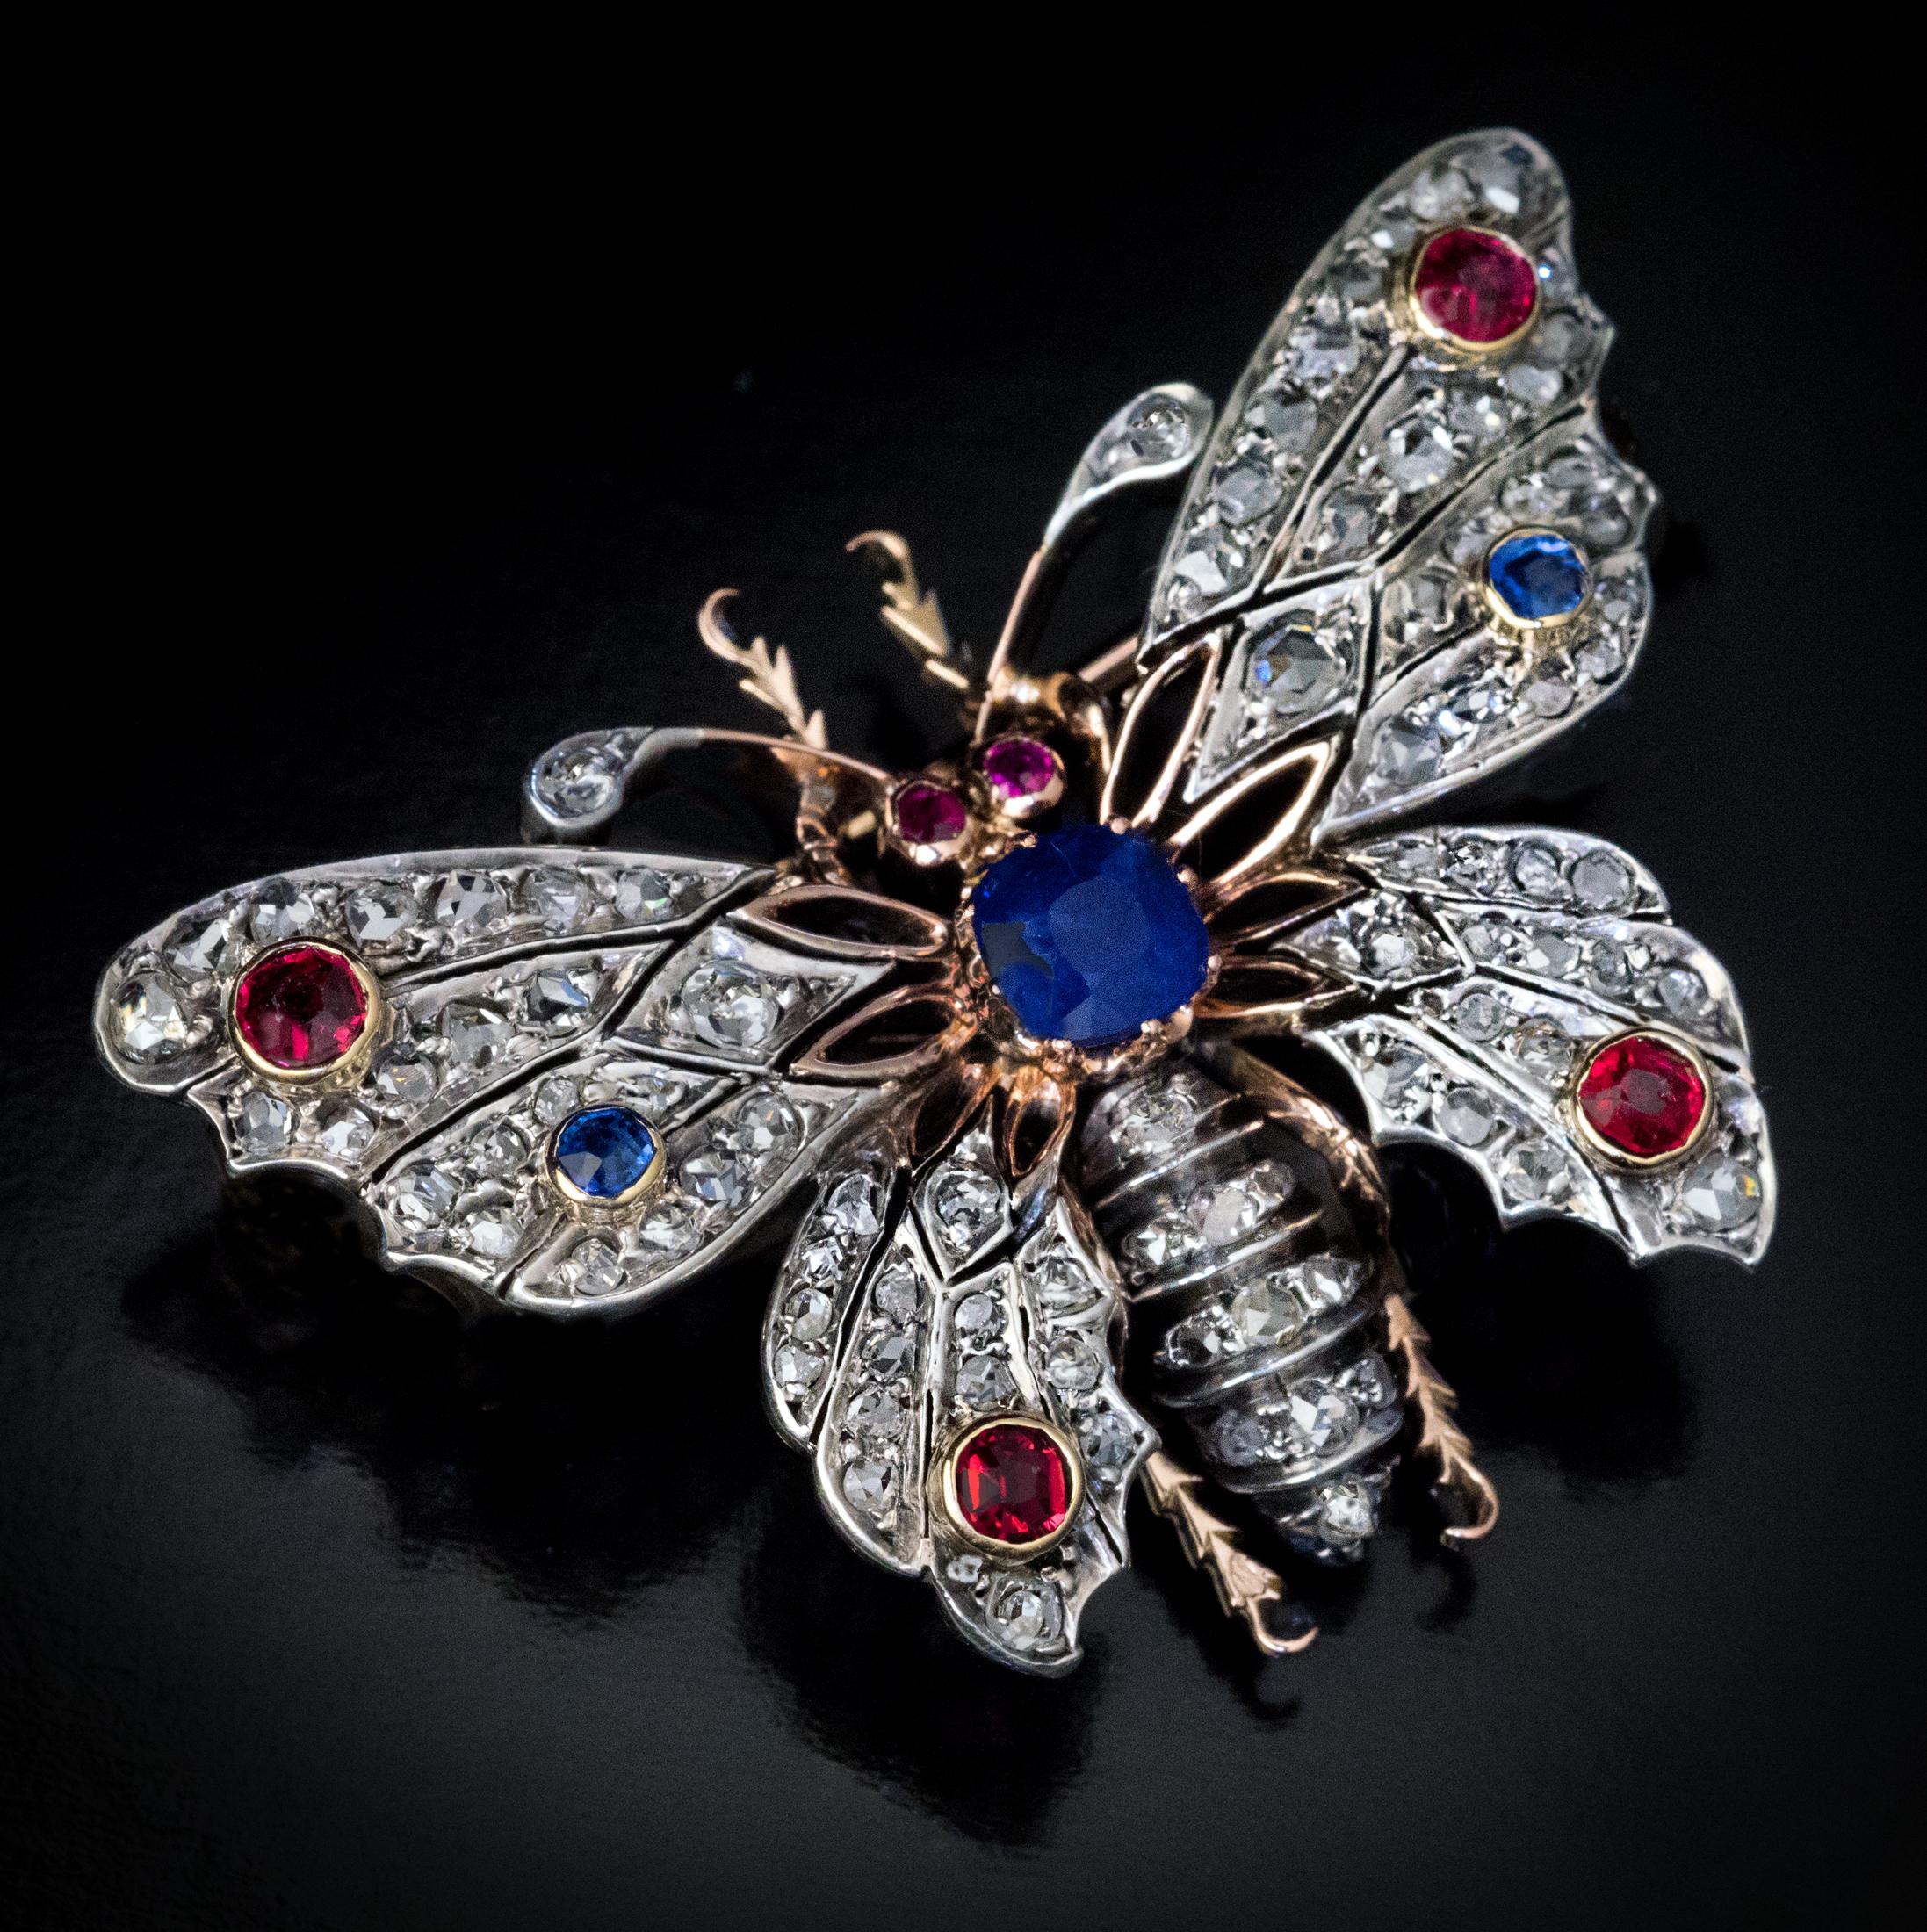 Frankreich, um 1890
Die Brosche ist fein als Schmetterling modelliert. Er ist handgefertigt aus 18-karätigem Gold und mit Diamanten im Rosenschliff, Saphiren und Rubinen verziert. Der wichtigste samtblaue Saphir (1,15 Karat) ist ein natürlicher,